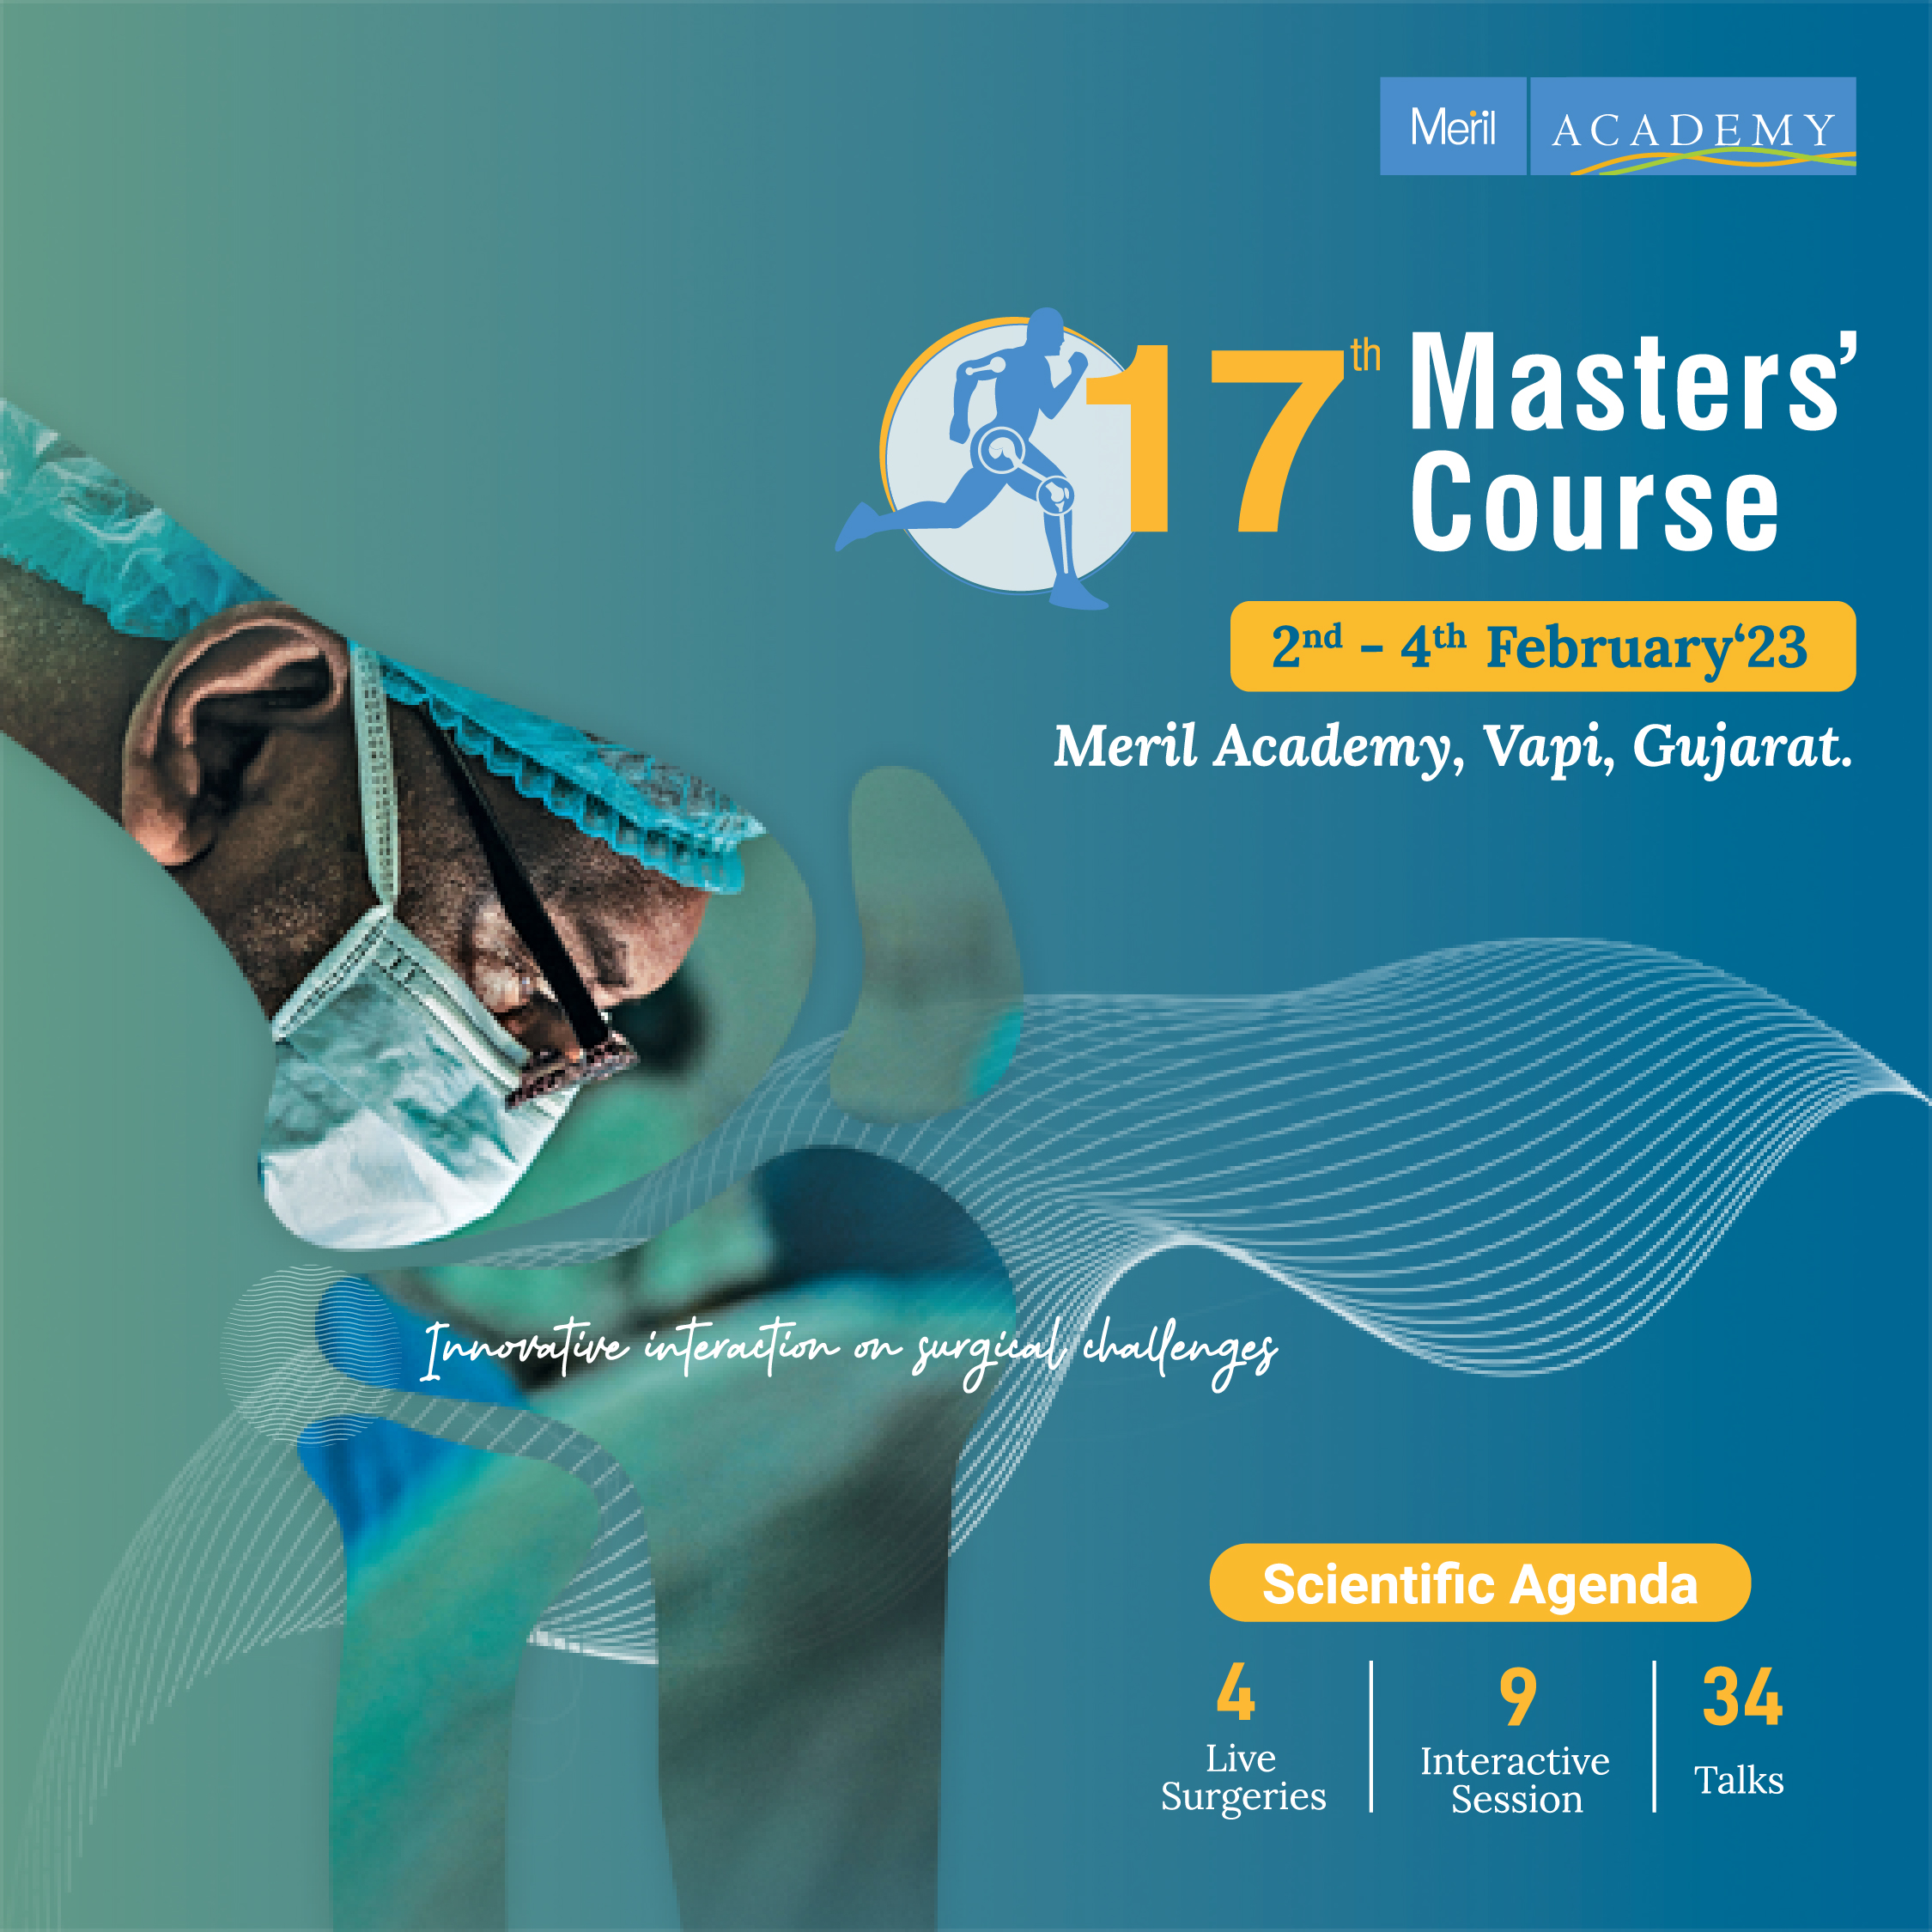 17th Masters' Course ! Agenda